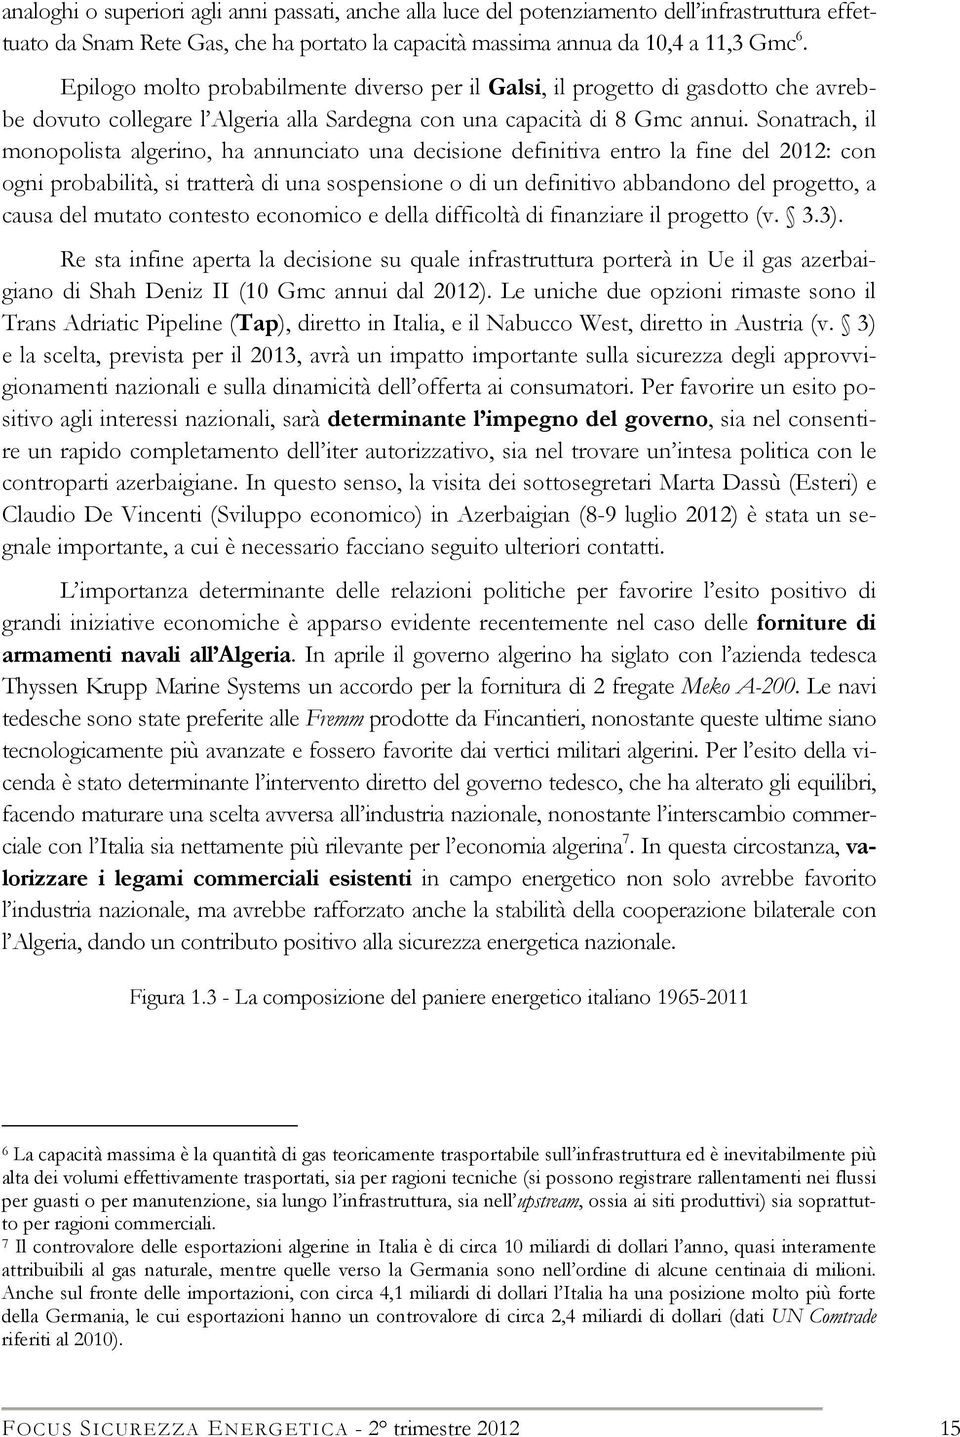 Sonatrach, il monopolista algerino, ha annunciato una decisione definitiva entro la fine del 2012: con ogni probabilità, si tratterà di una sospensione o di un definitivo abbandono del progetto, a